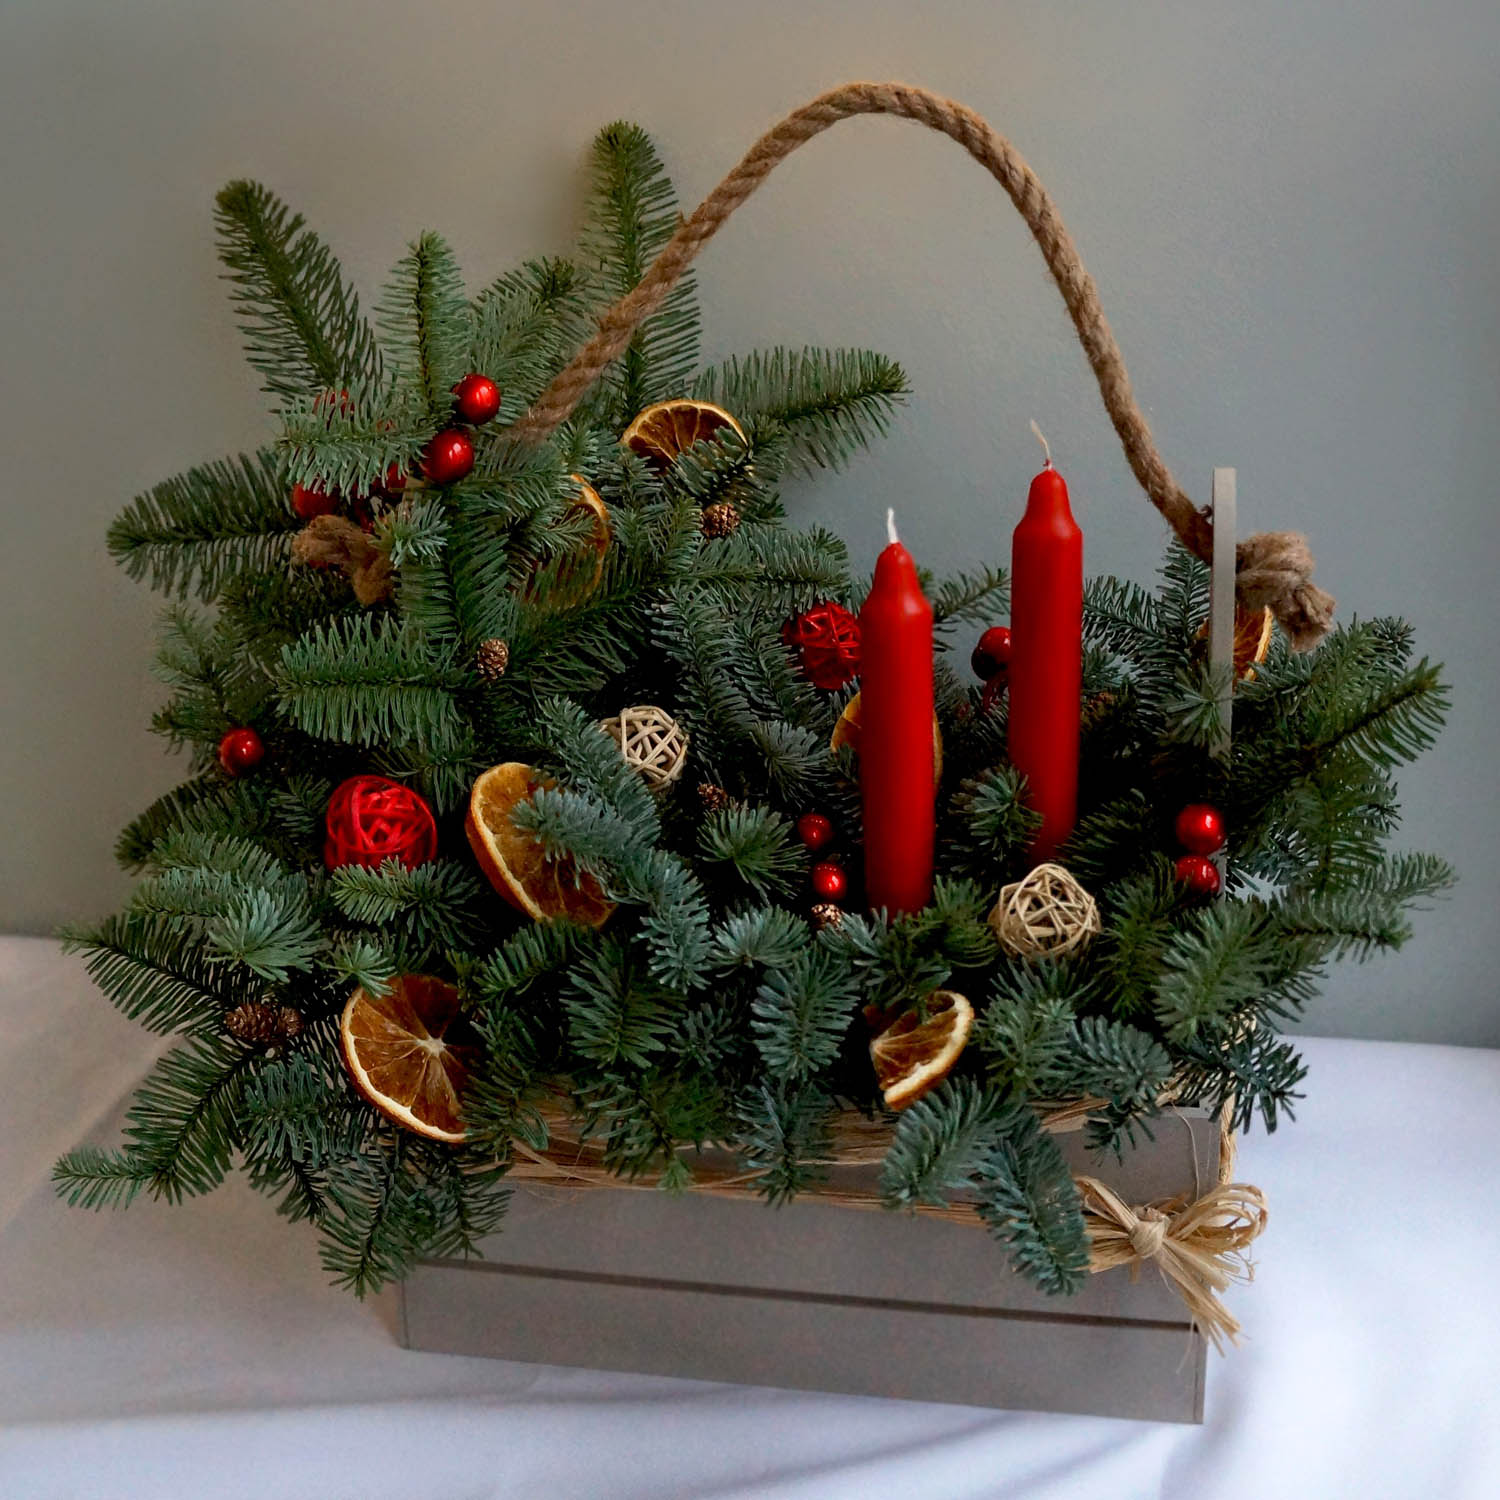 новогодняя корзина, композиция для нового года в деревянном ящике с нобилисом, свечами и сушенными апельсинами